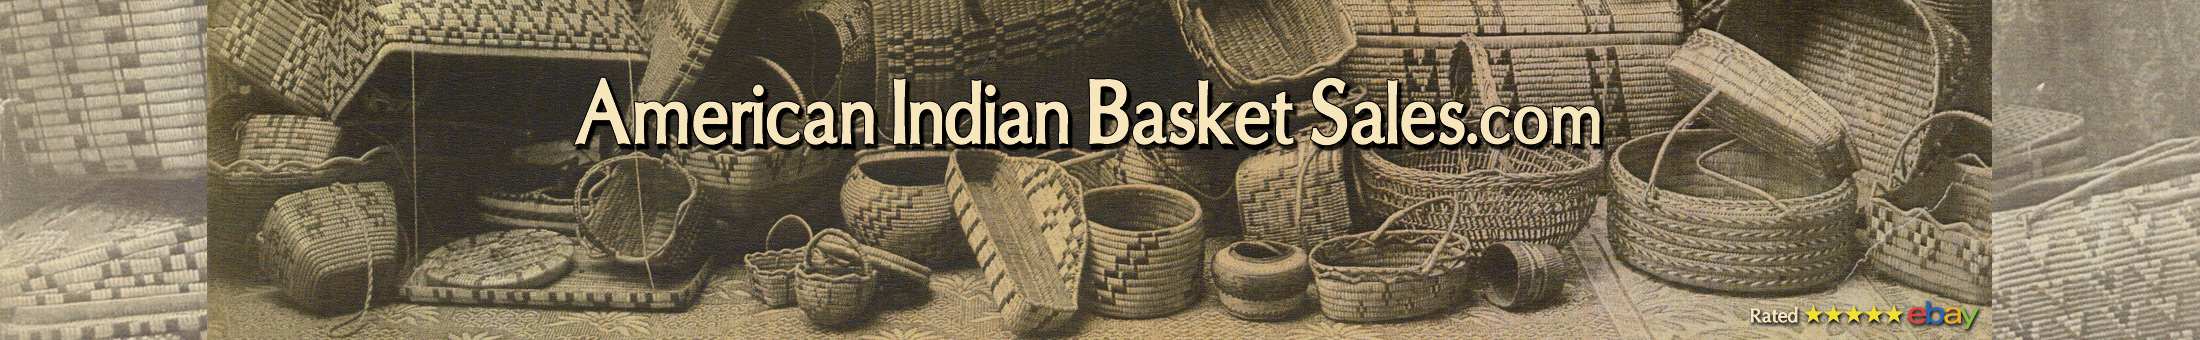 American Indian Basket Sales